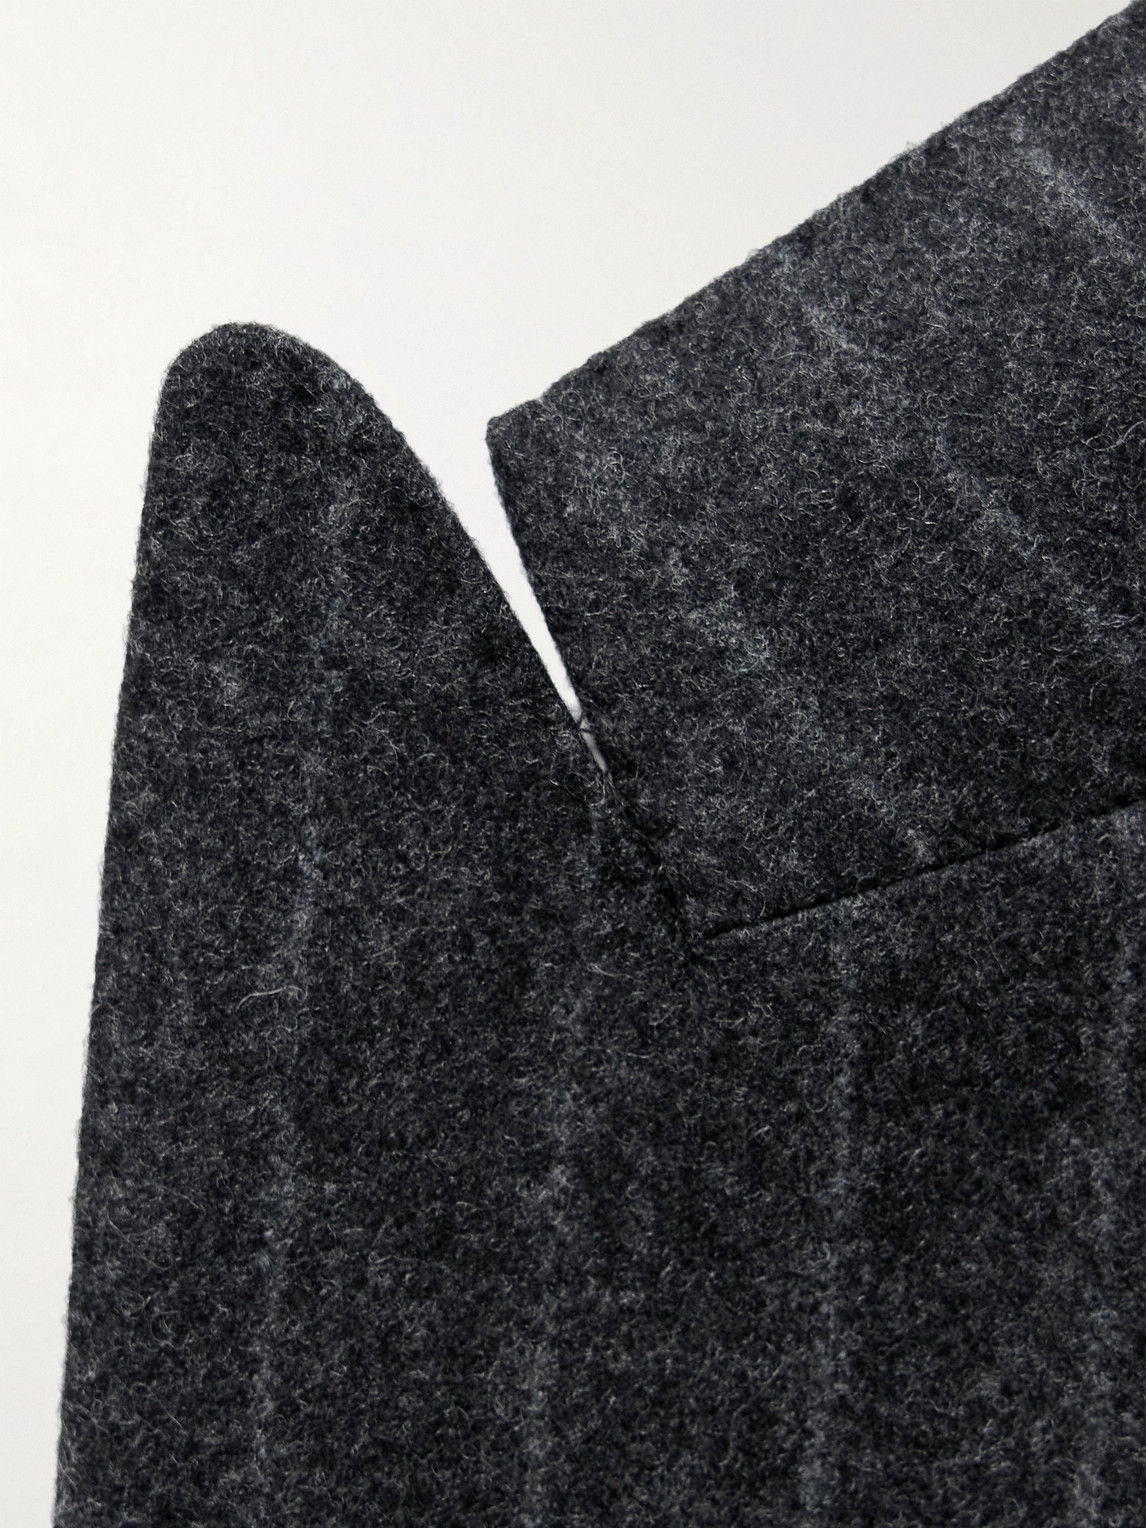 Shop Kingsman Double-breasted Striped Wool-felt Suit Jacket In Gray